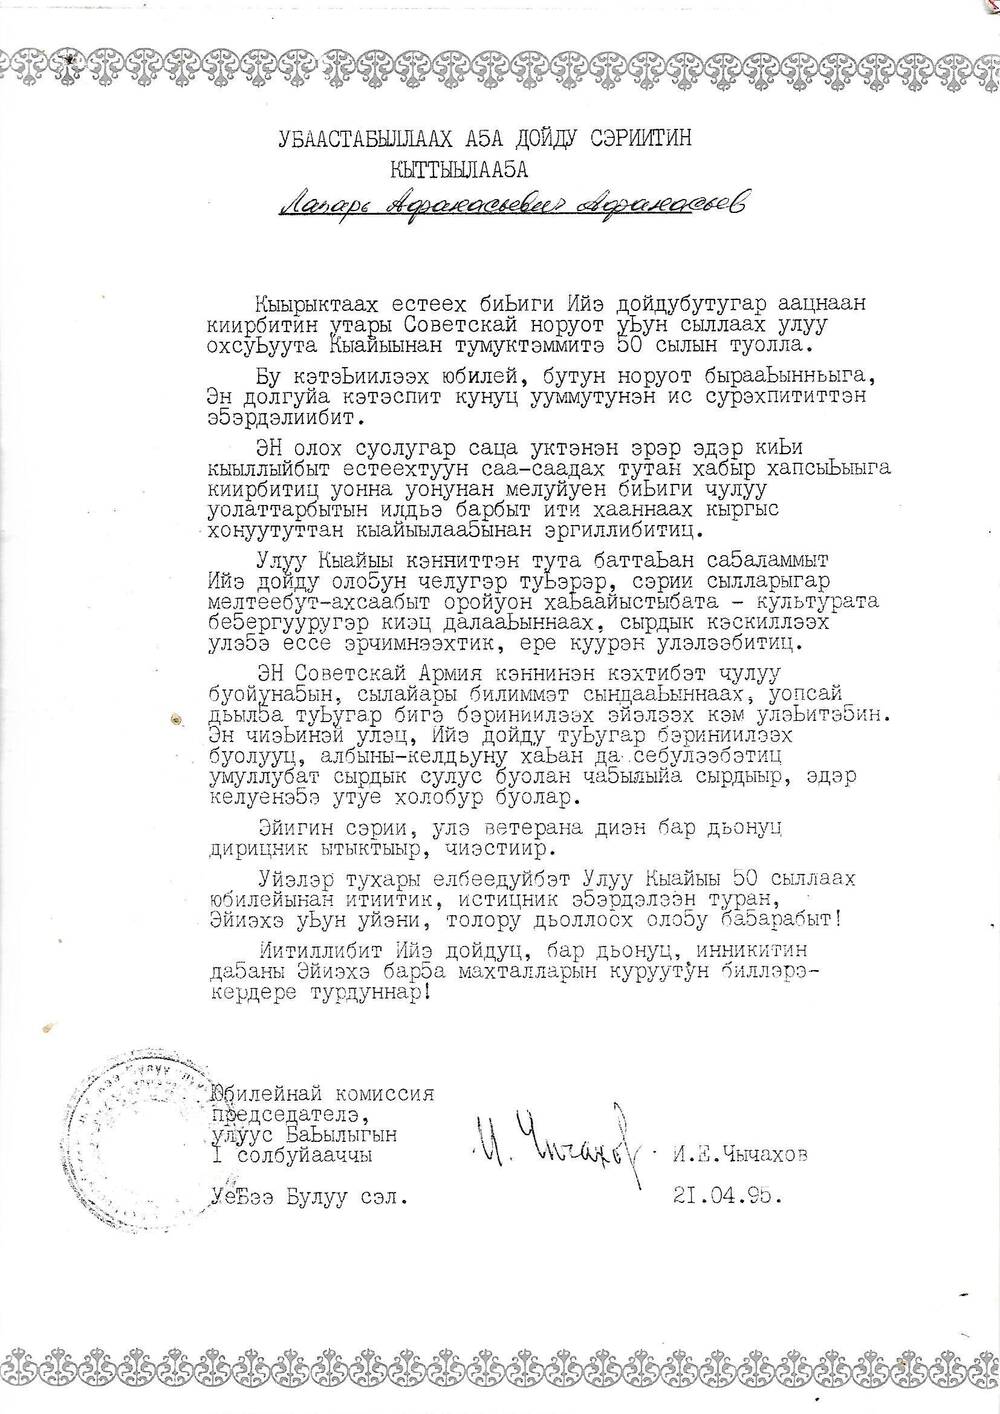 Поздравление от  21.04.1995г.Афанасьев Лазарь Афанасьевич